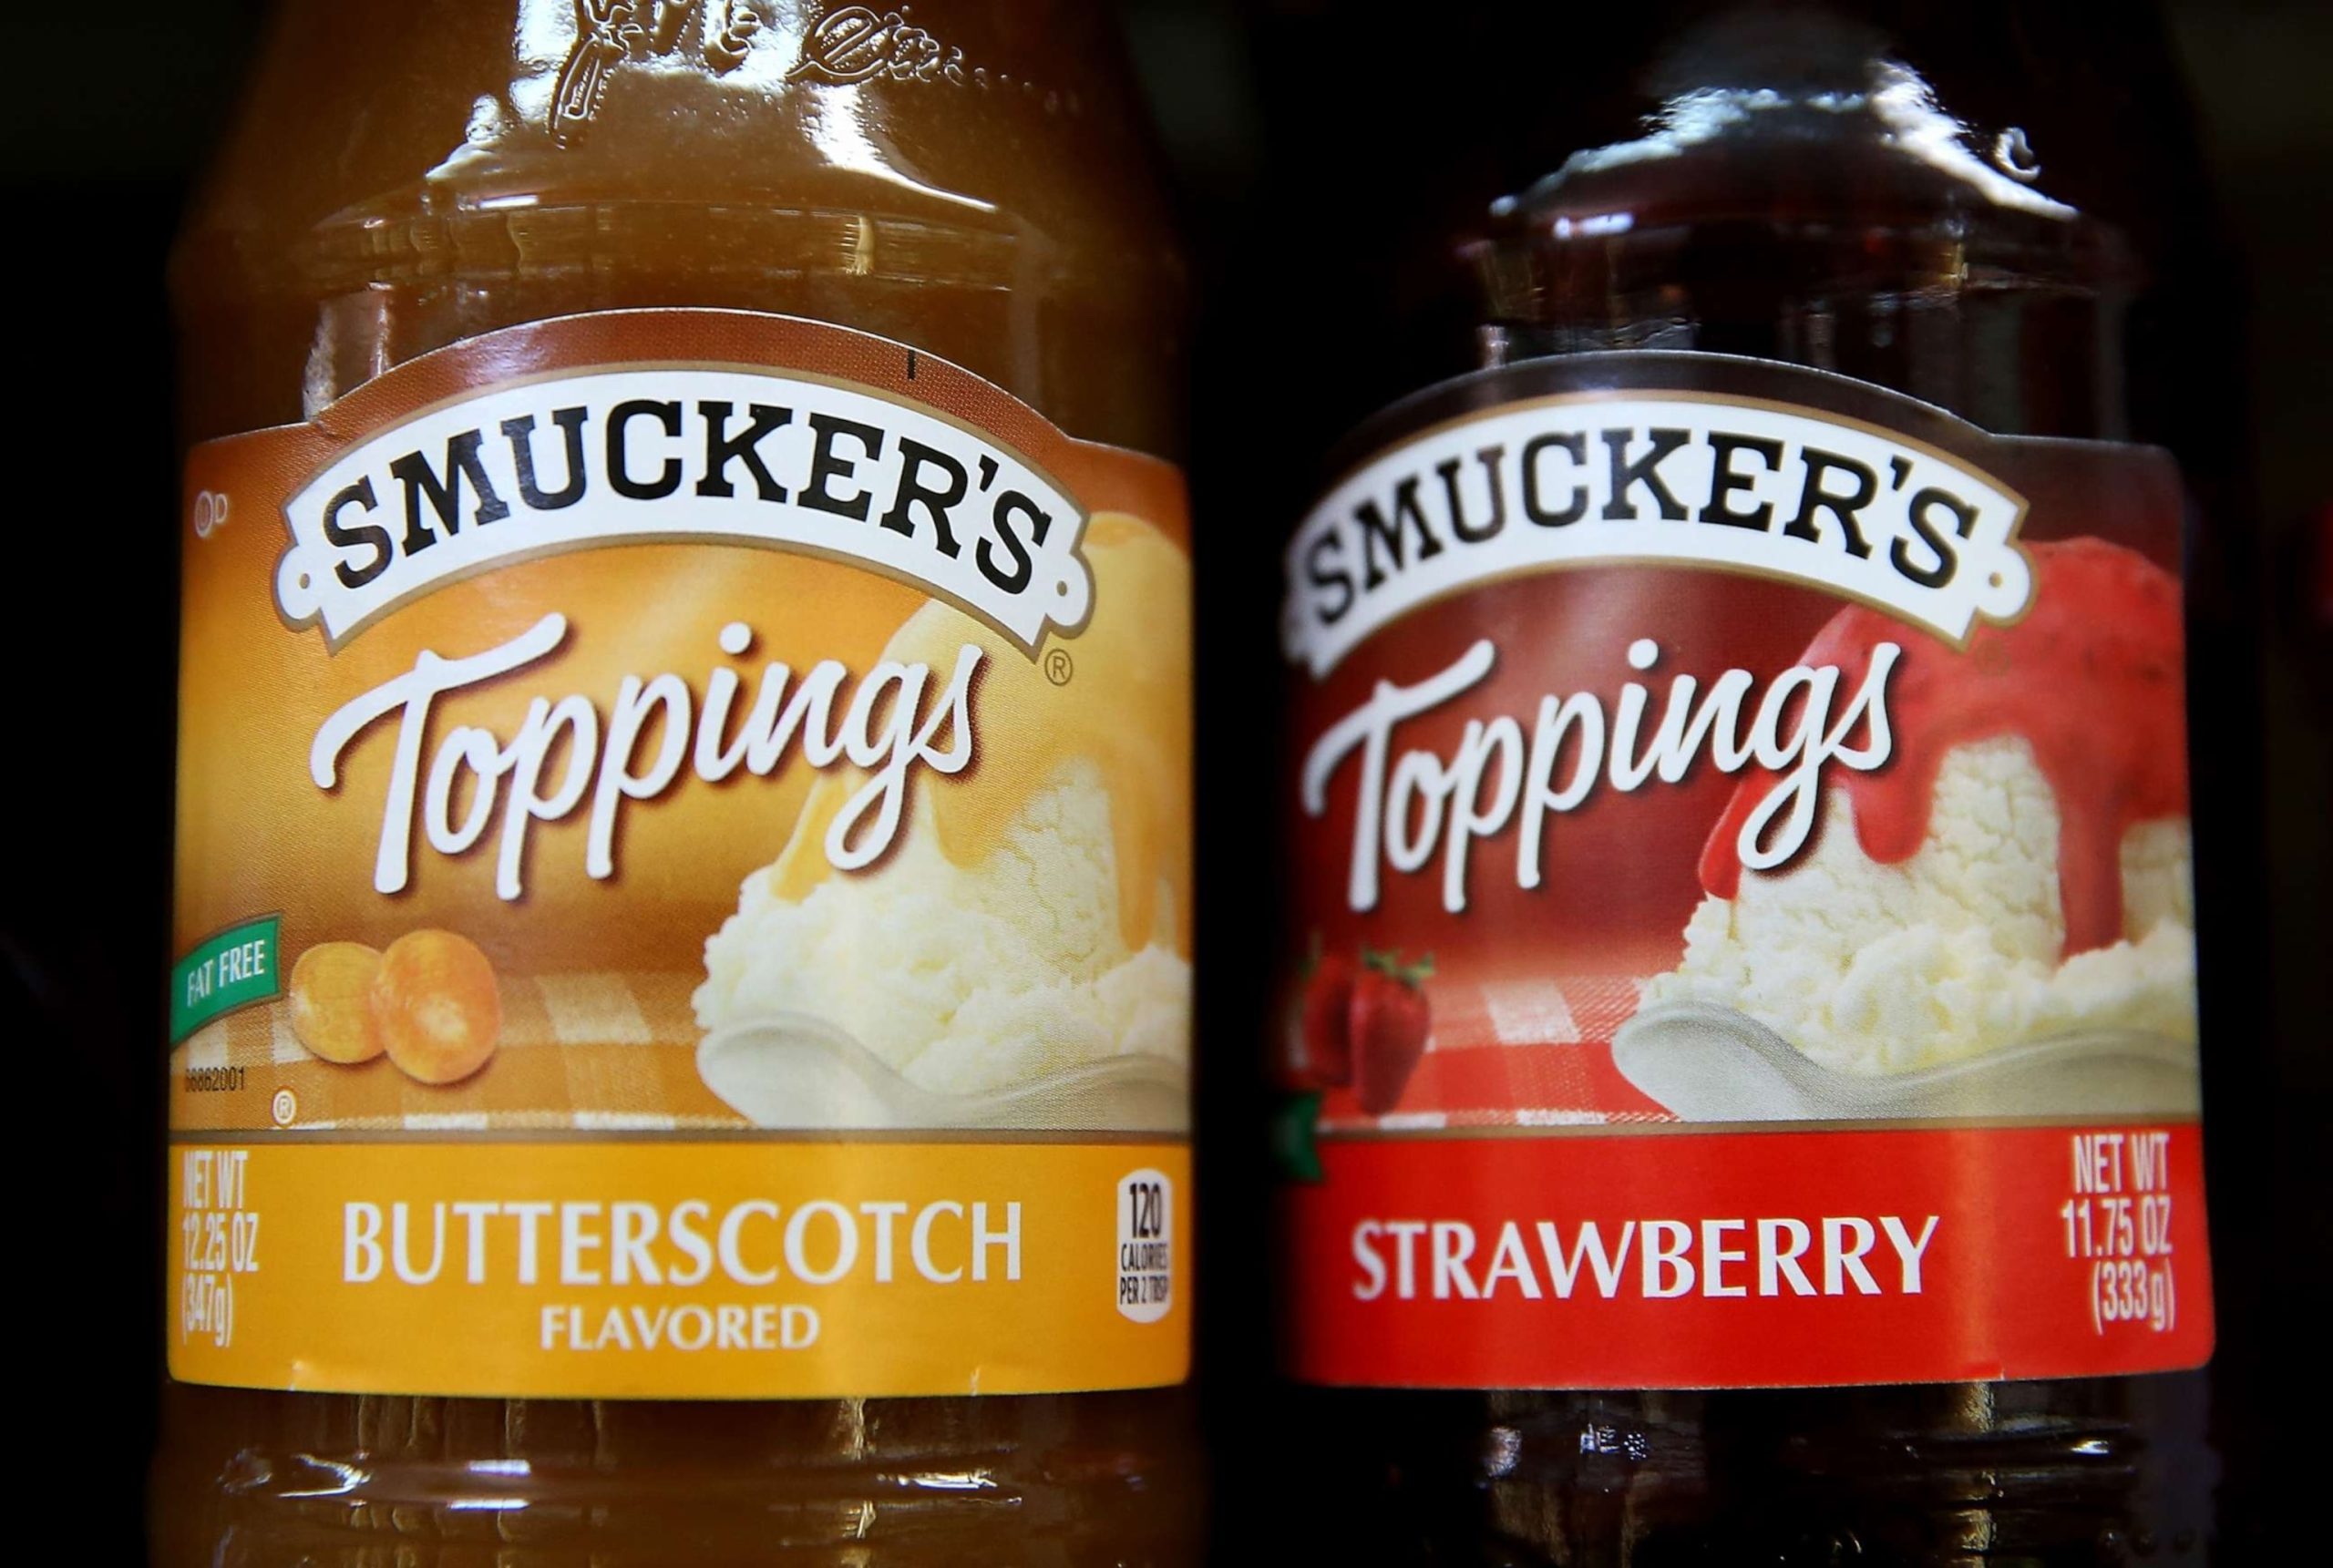 JM Smucker Acquires Hostess Brands, a Snack Maker, for $5.6 Billion